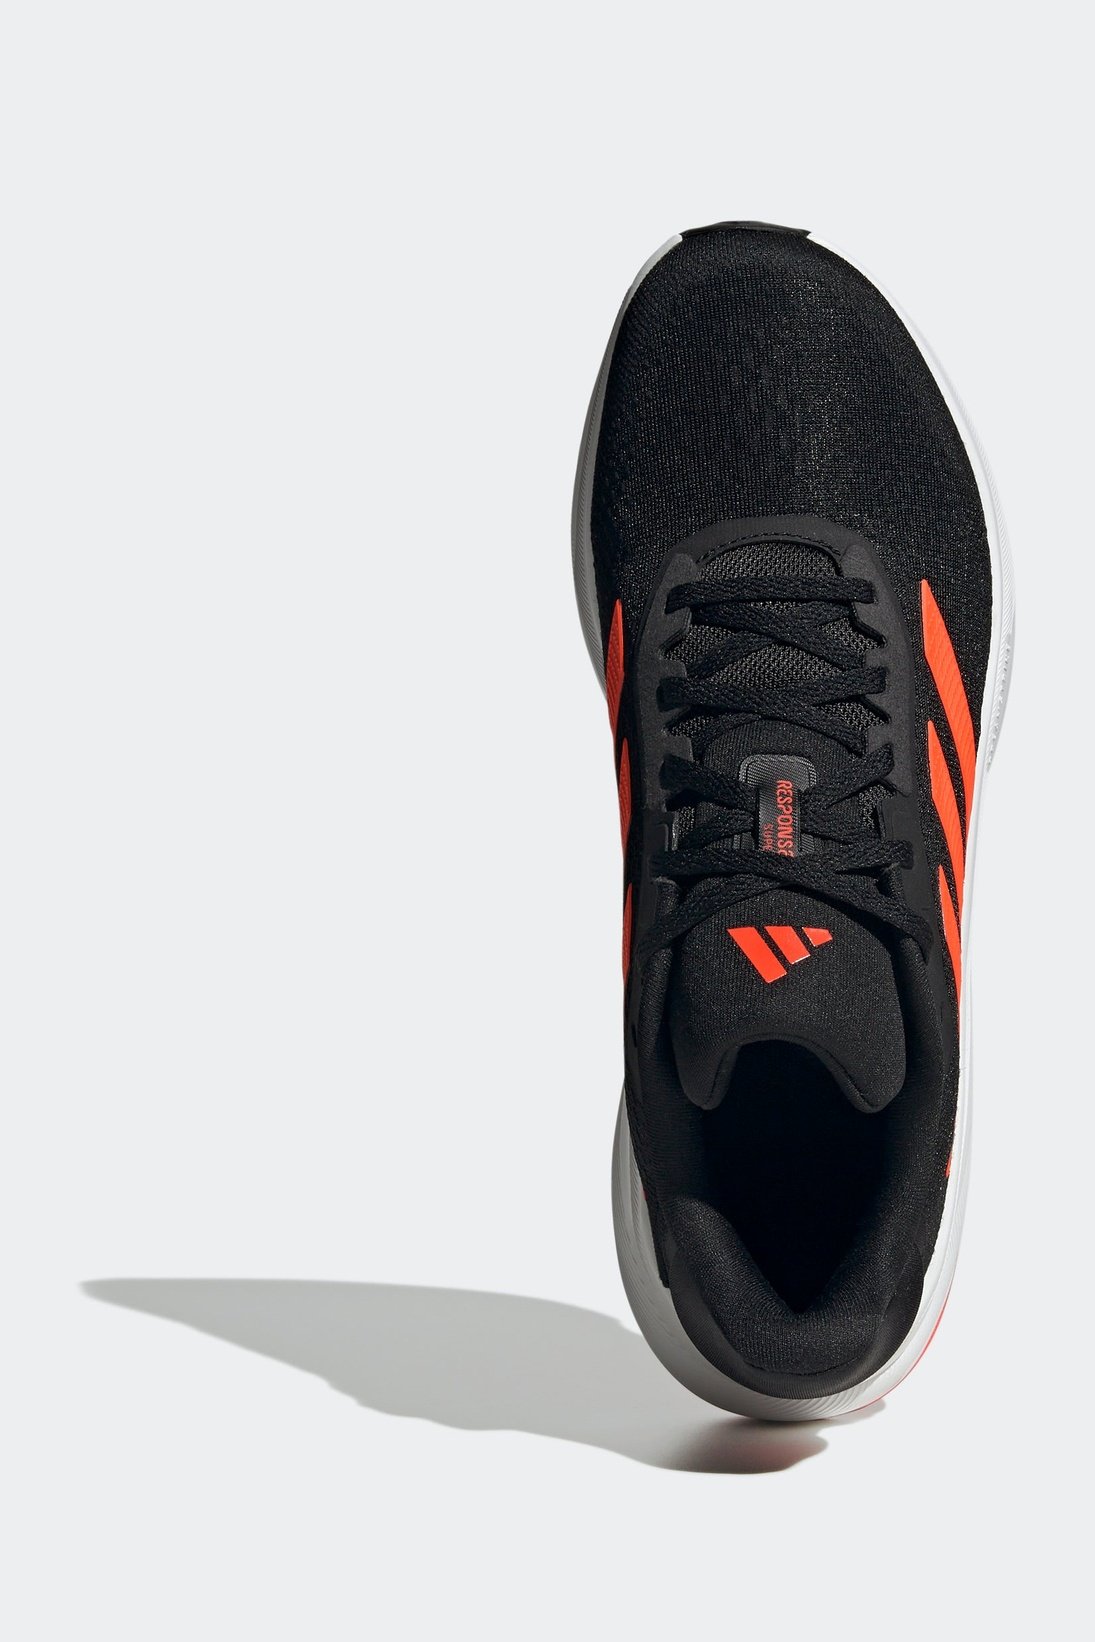 נעלי ספורט לגברים RESPONSE SUPER בצבע שחור ואדום